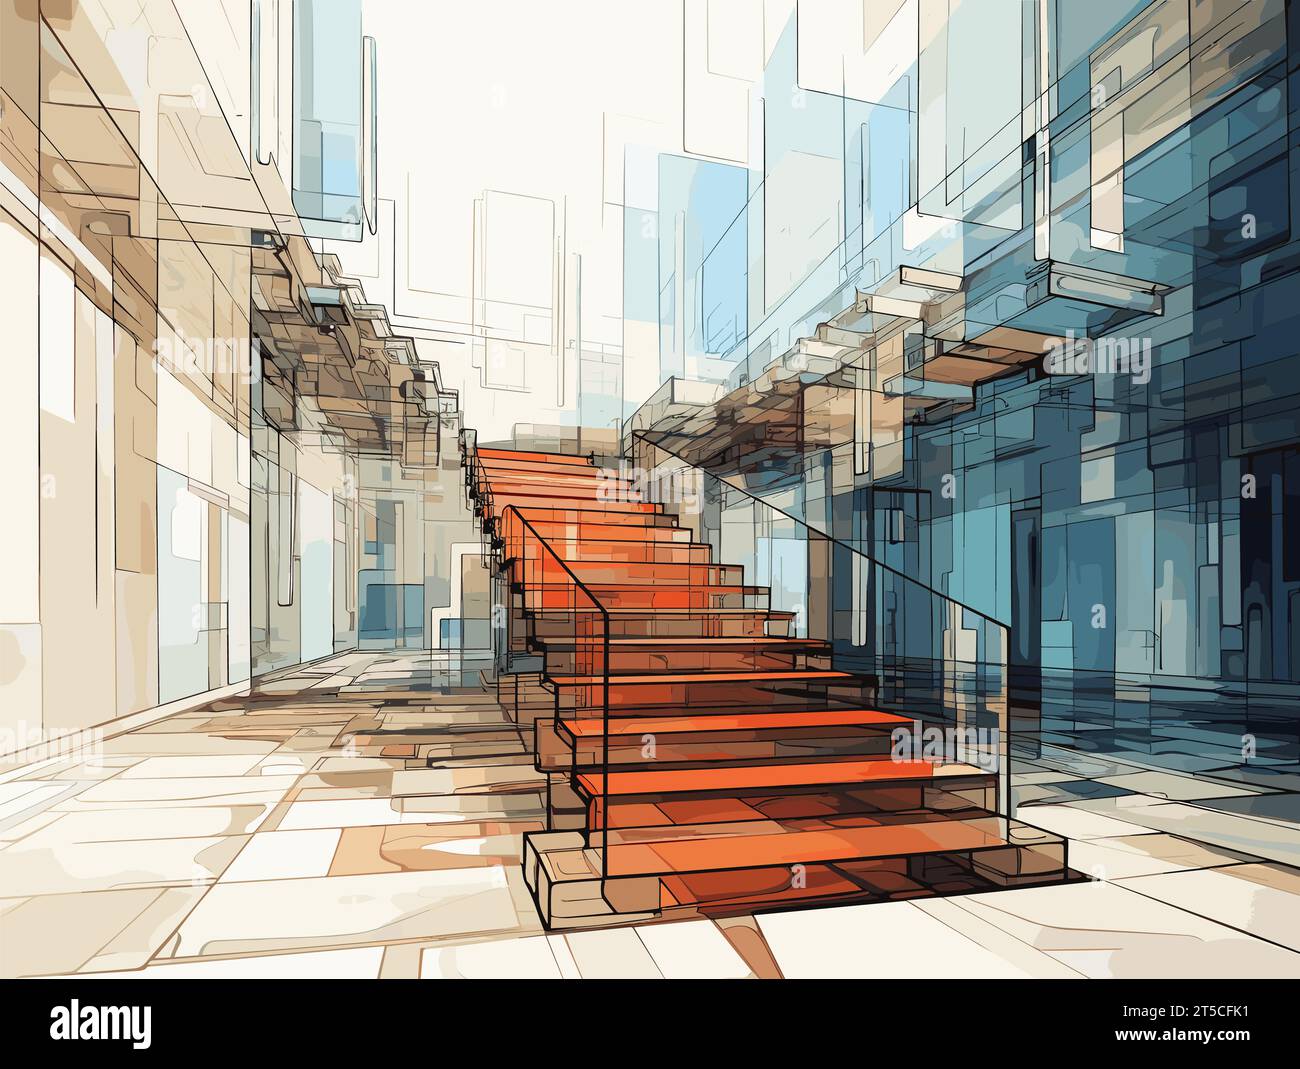 Zeichnung beweglicher Treppen hinter einer Glaswand, Illustration getrennte, überzogene Linien. Stock Vektor